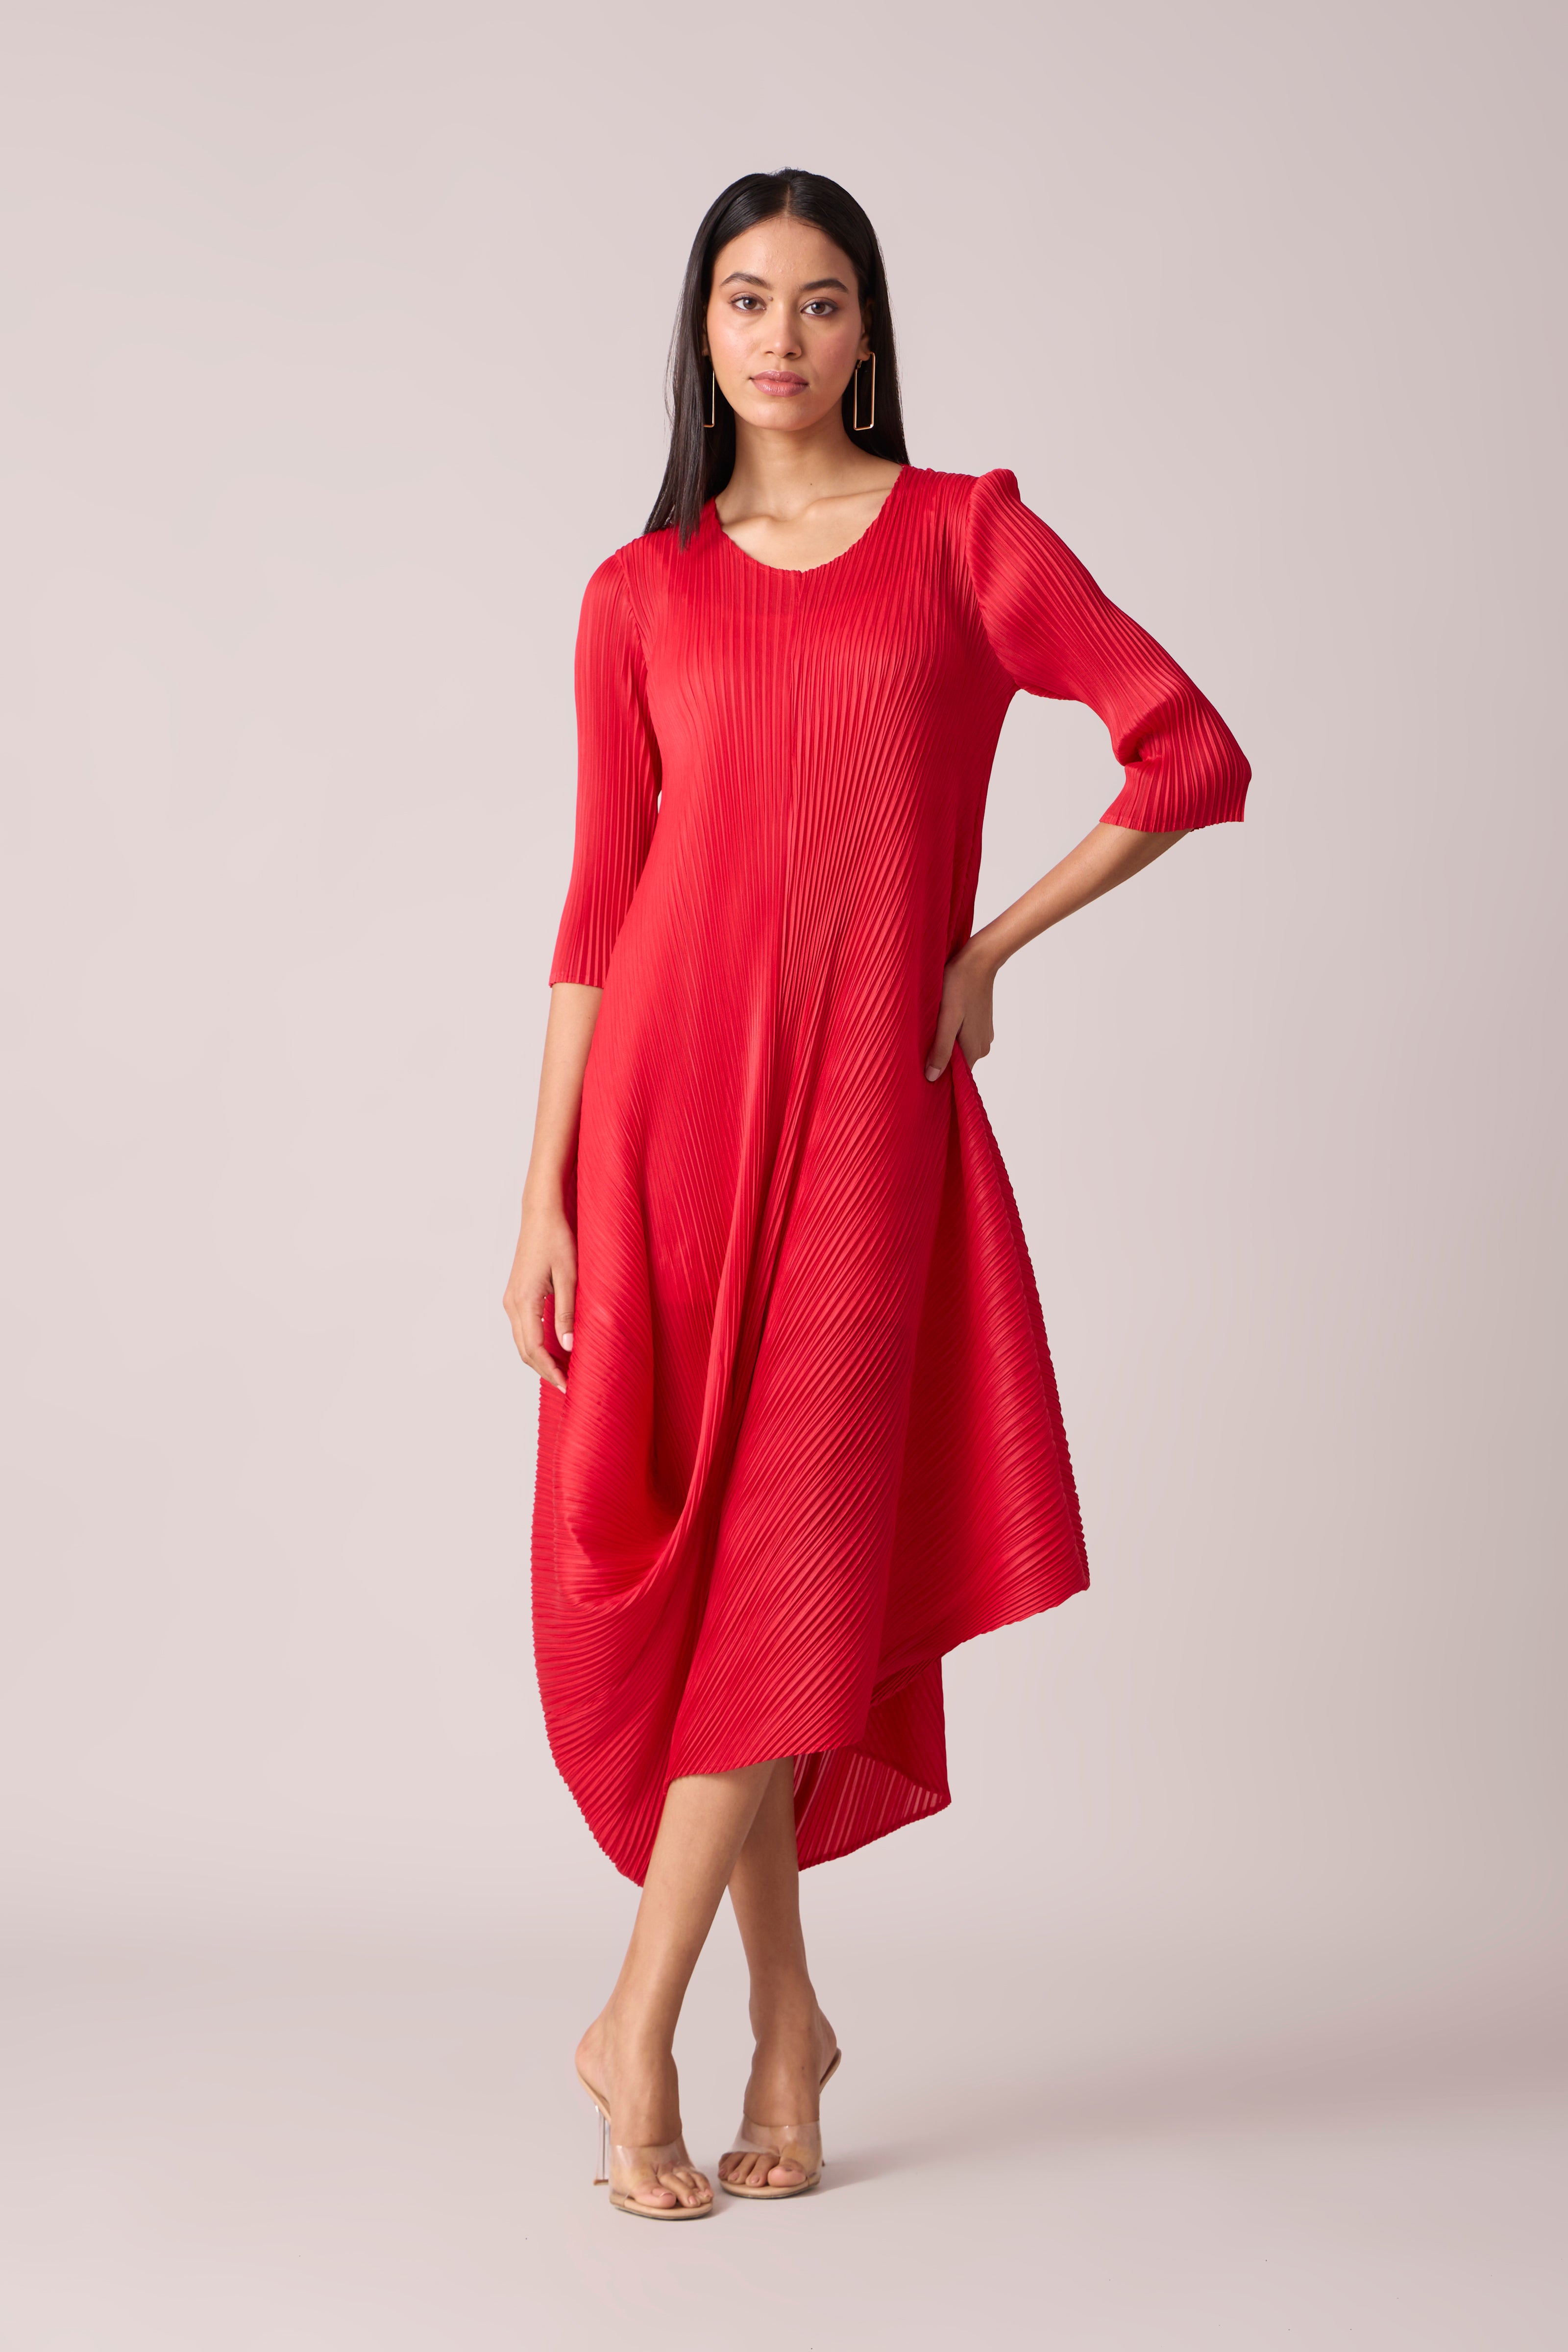 Laila Drape Dress - Red